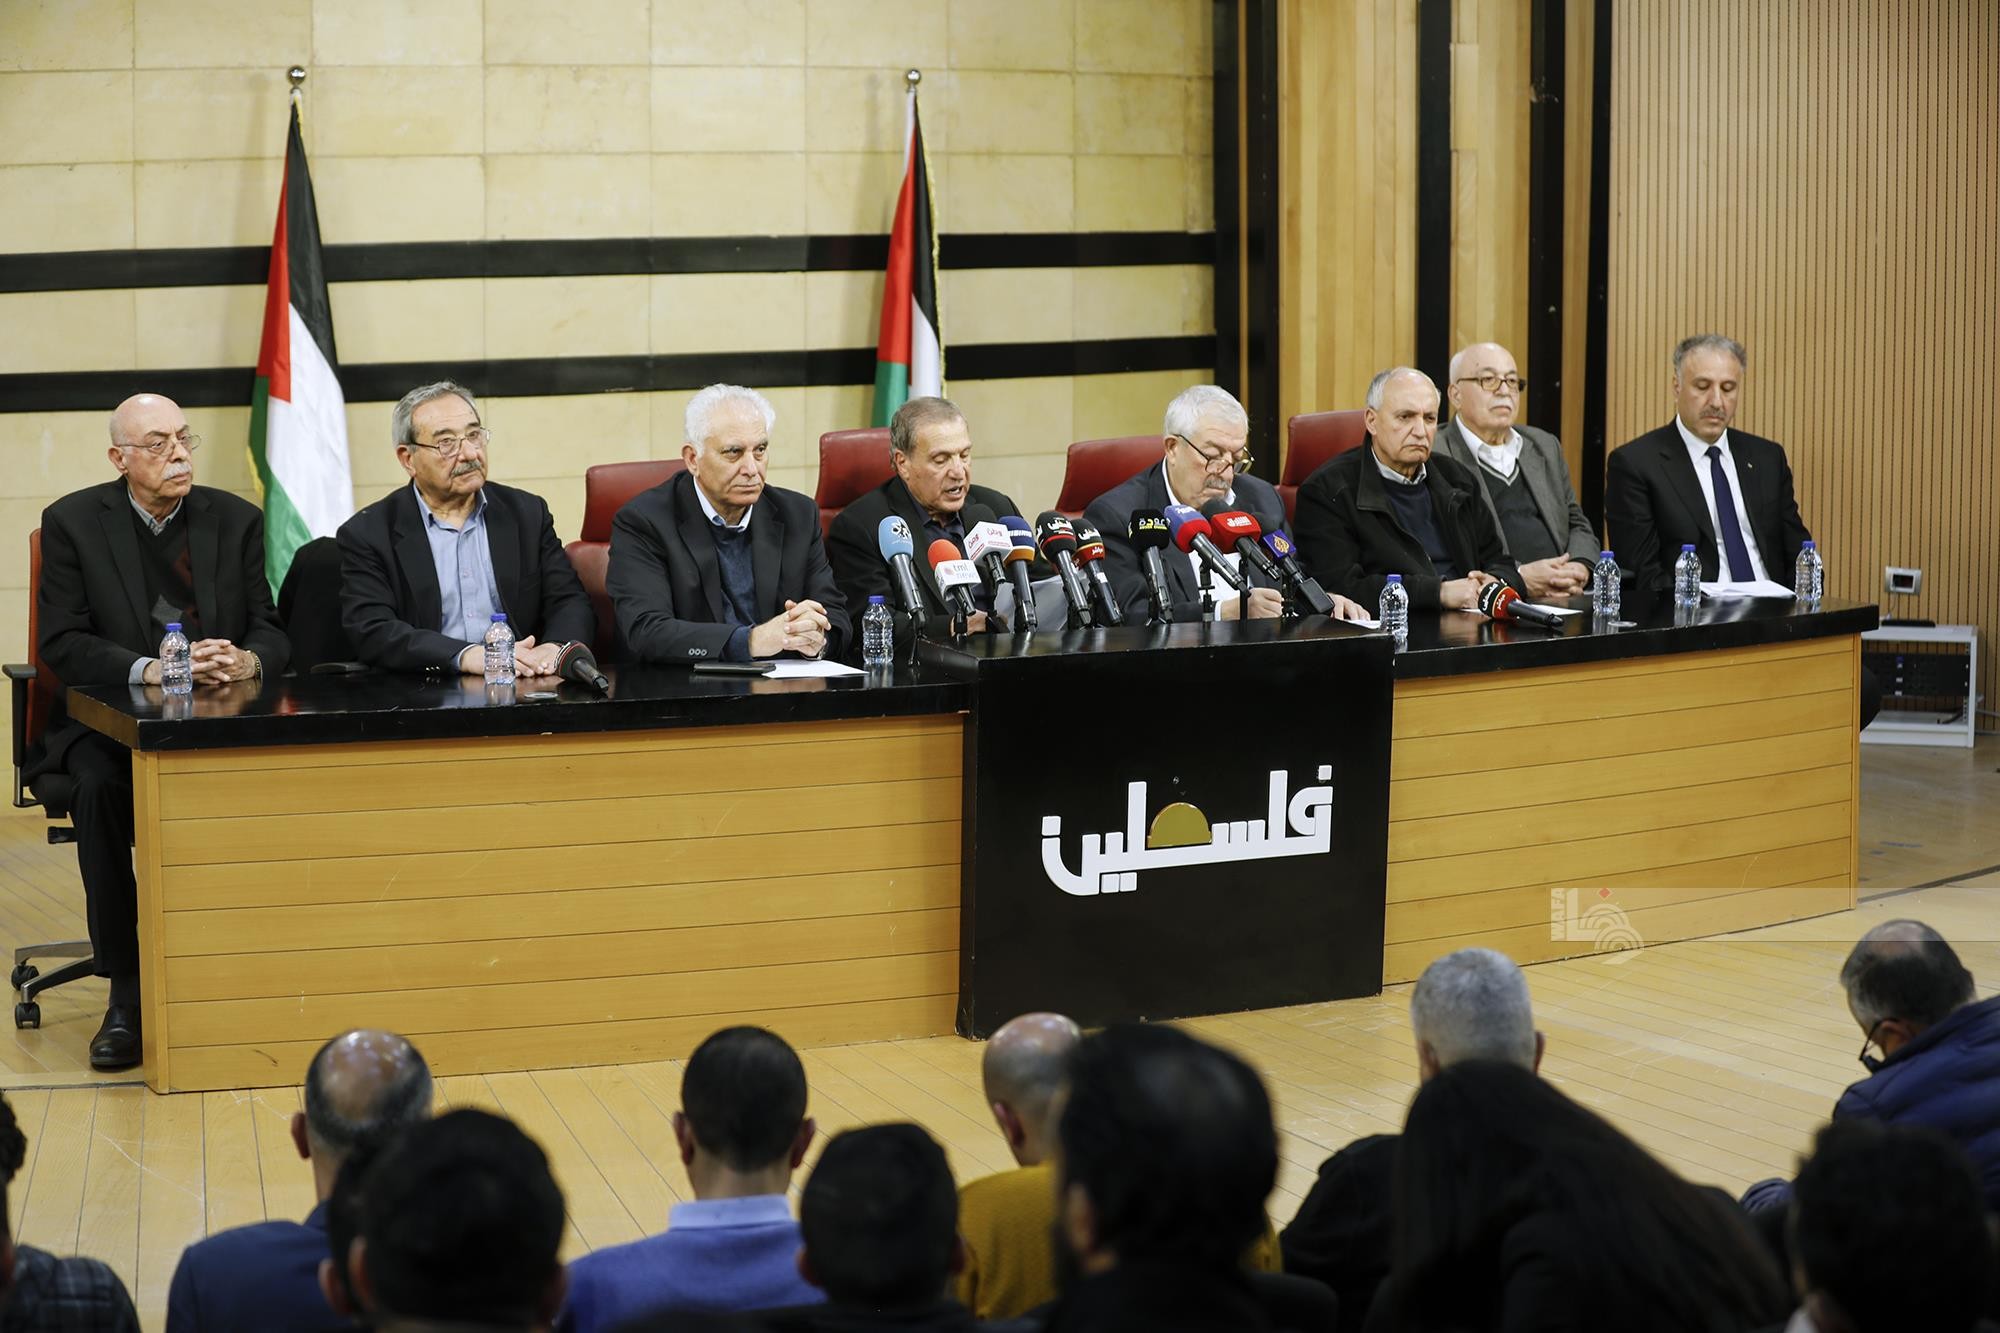 ه الناطق الرسمي باسم الرئاسة نبيل أبو ردينة خلال مؤتمر صحفي.jfif